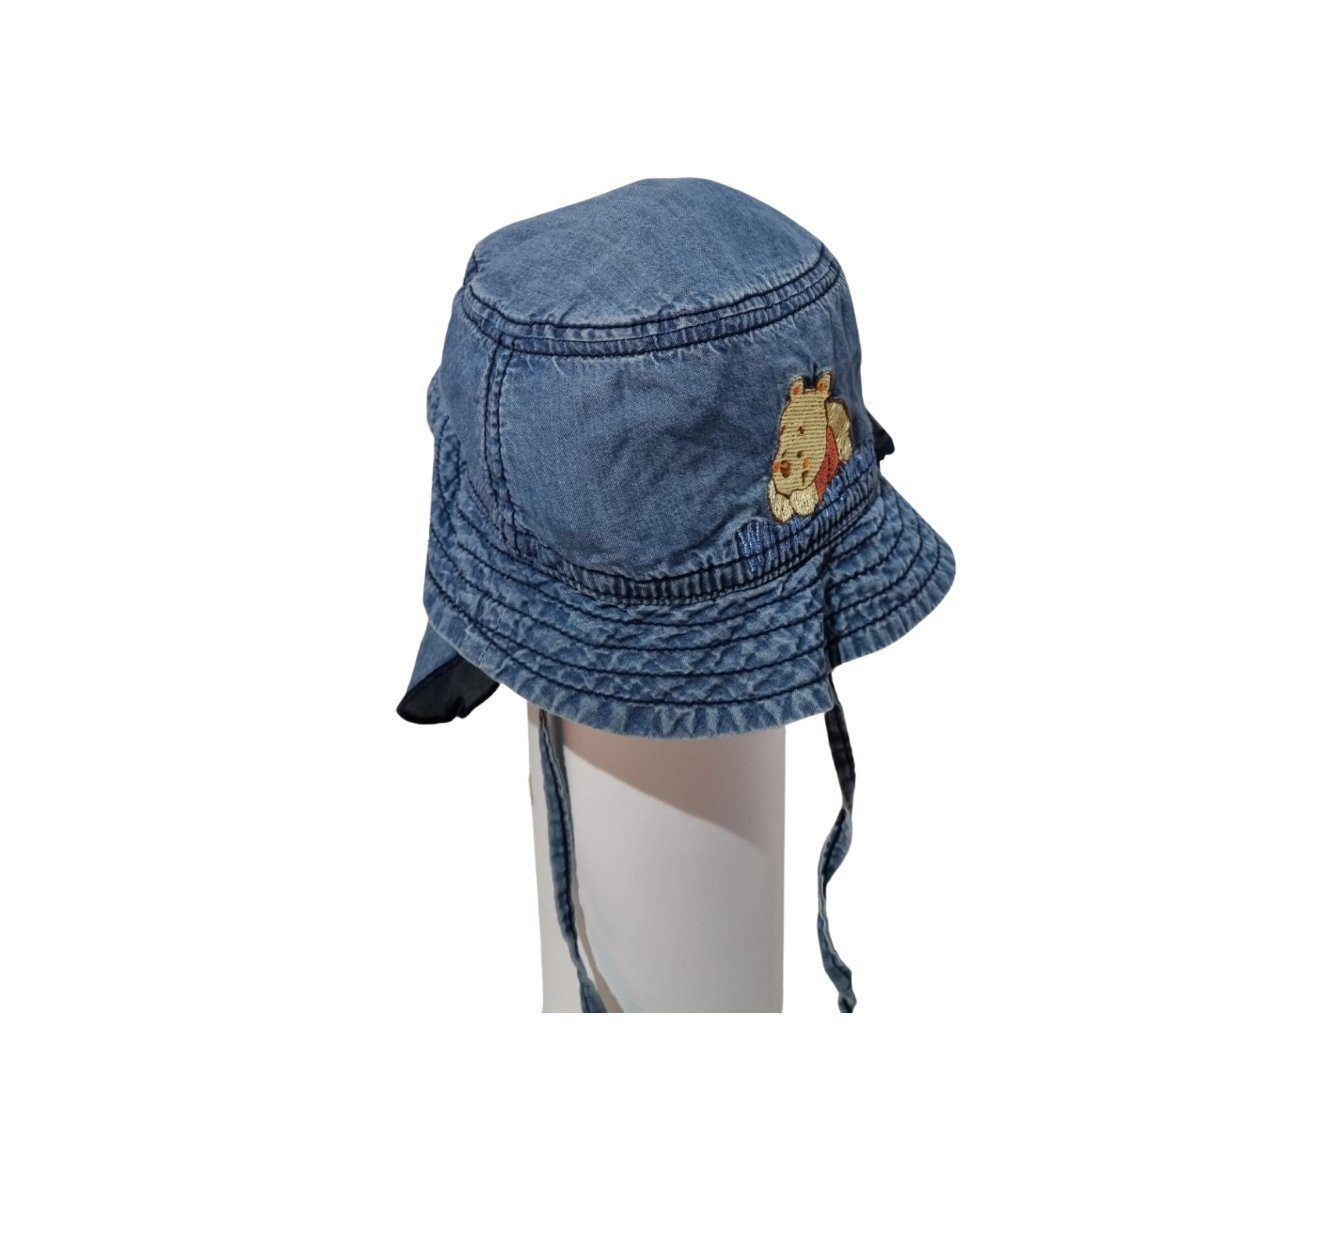 Schirmmütze blau 23-25 "Winnie" Disney Hut Jeans Mädchen